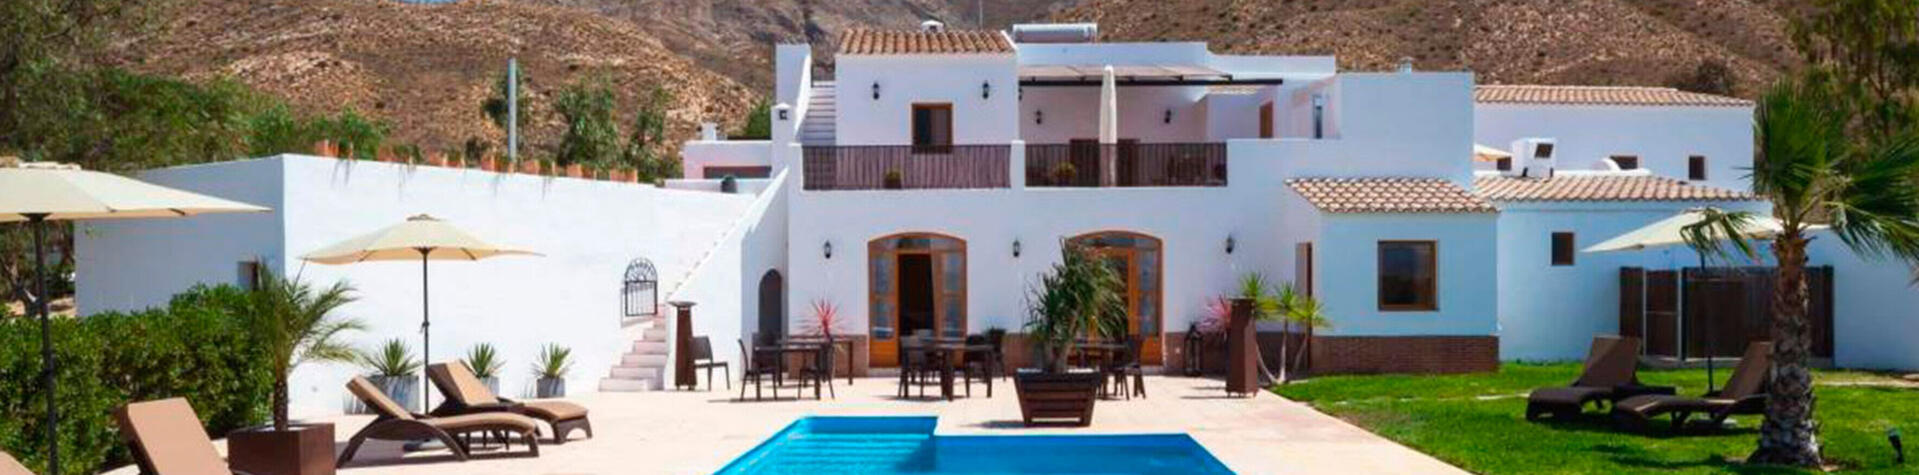 Houses in Almería